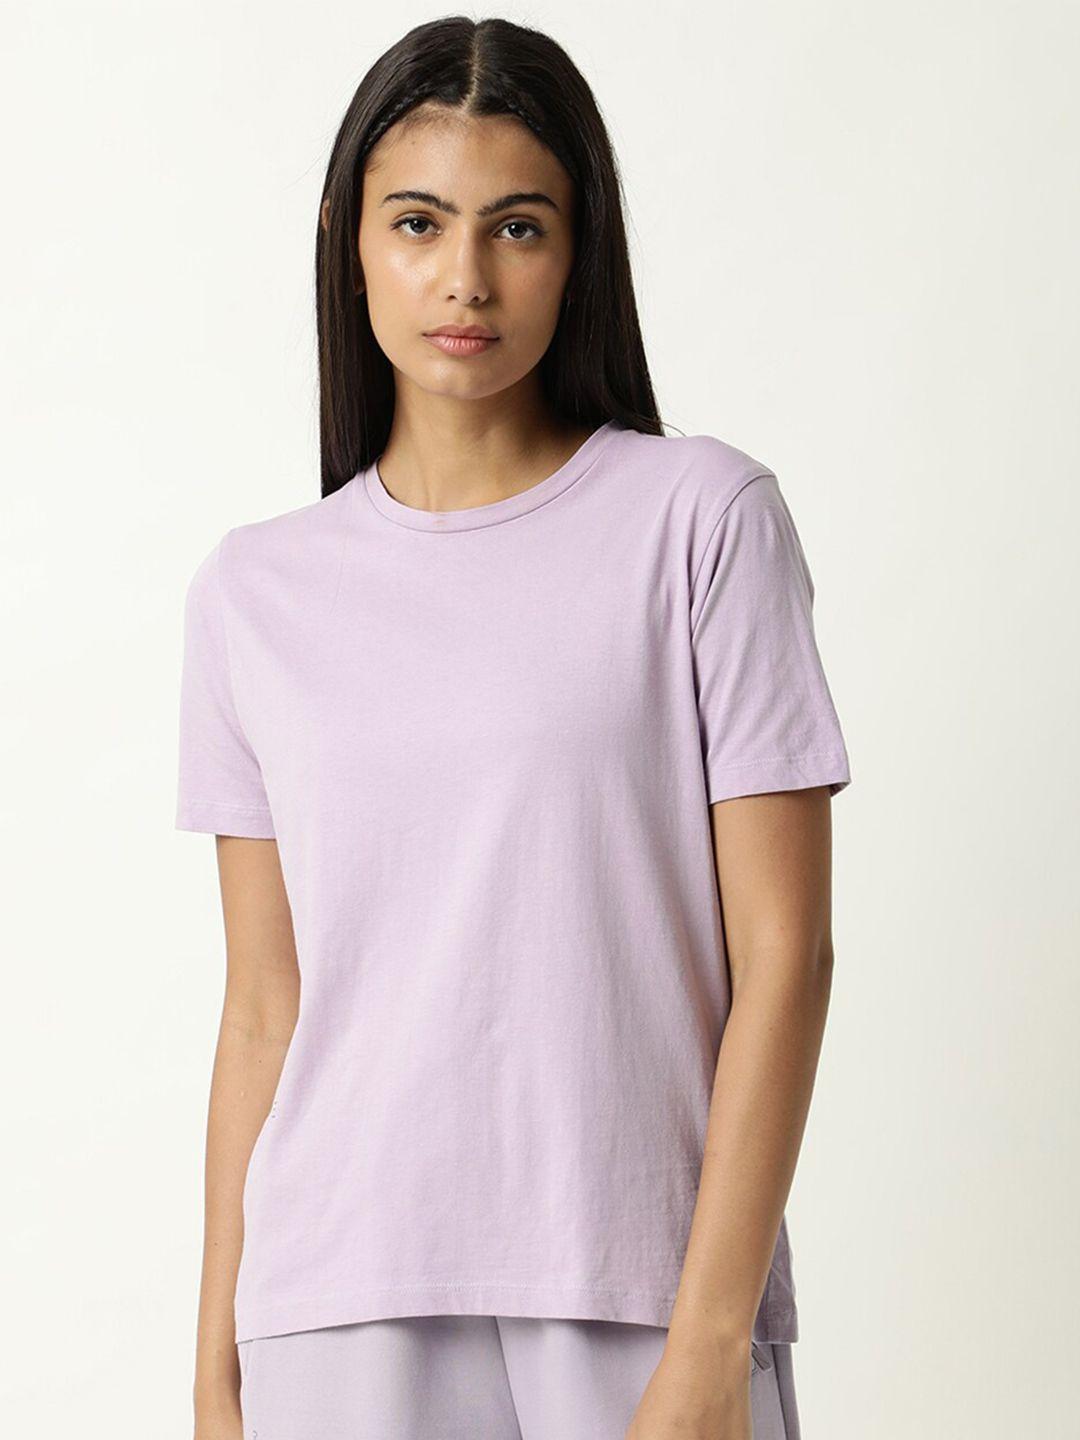 articale women lavender solid slim fit cotton t-shirt